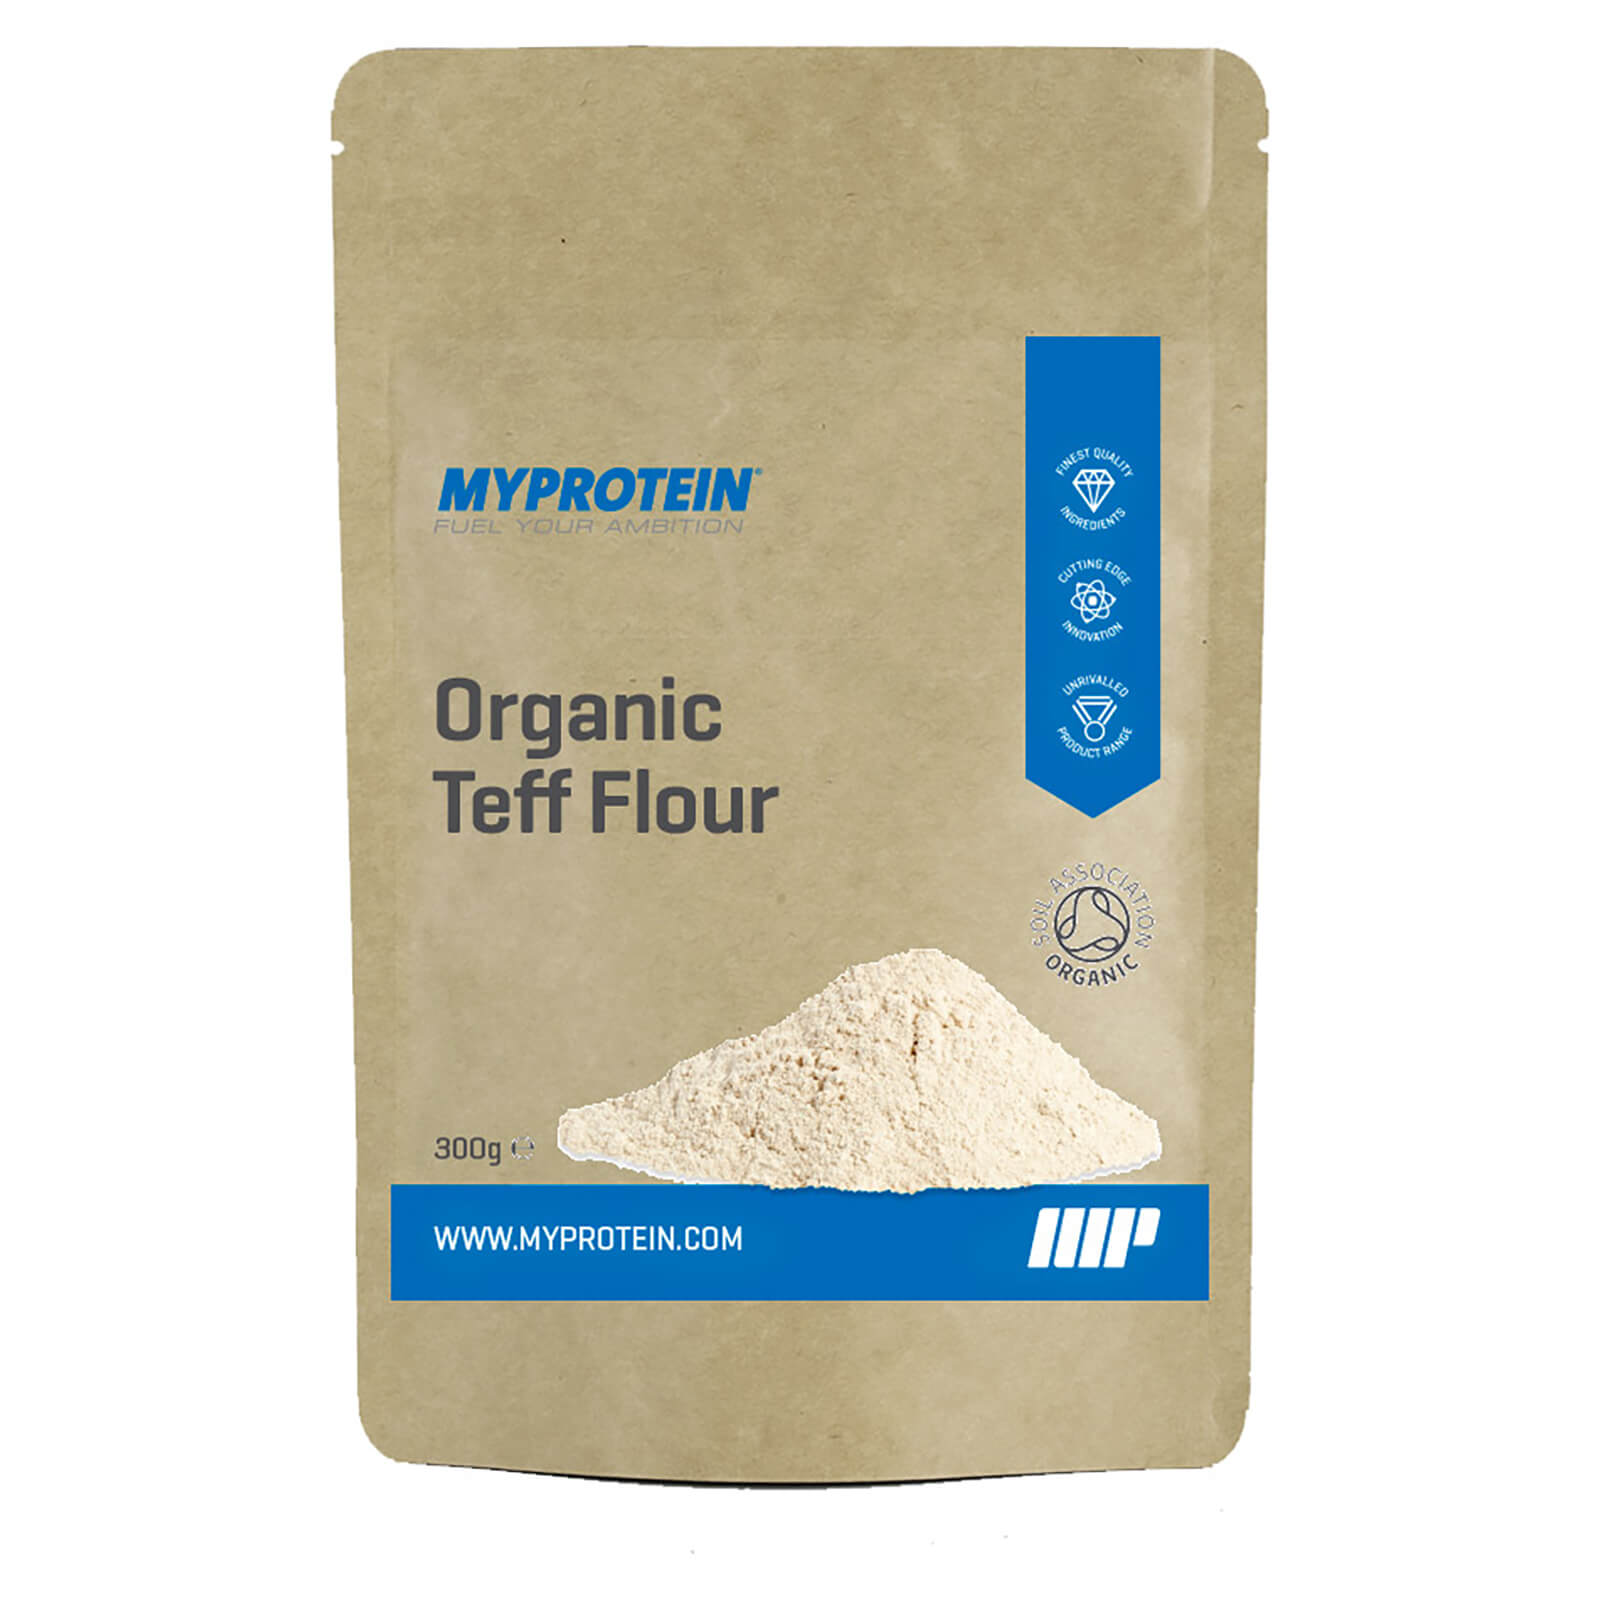 Myprotein Teff Superfine Flour